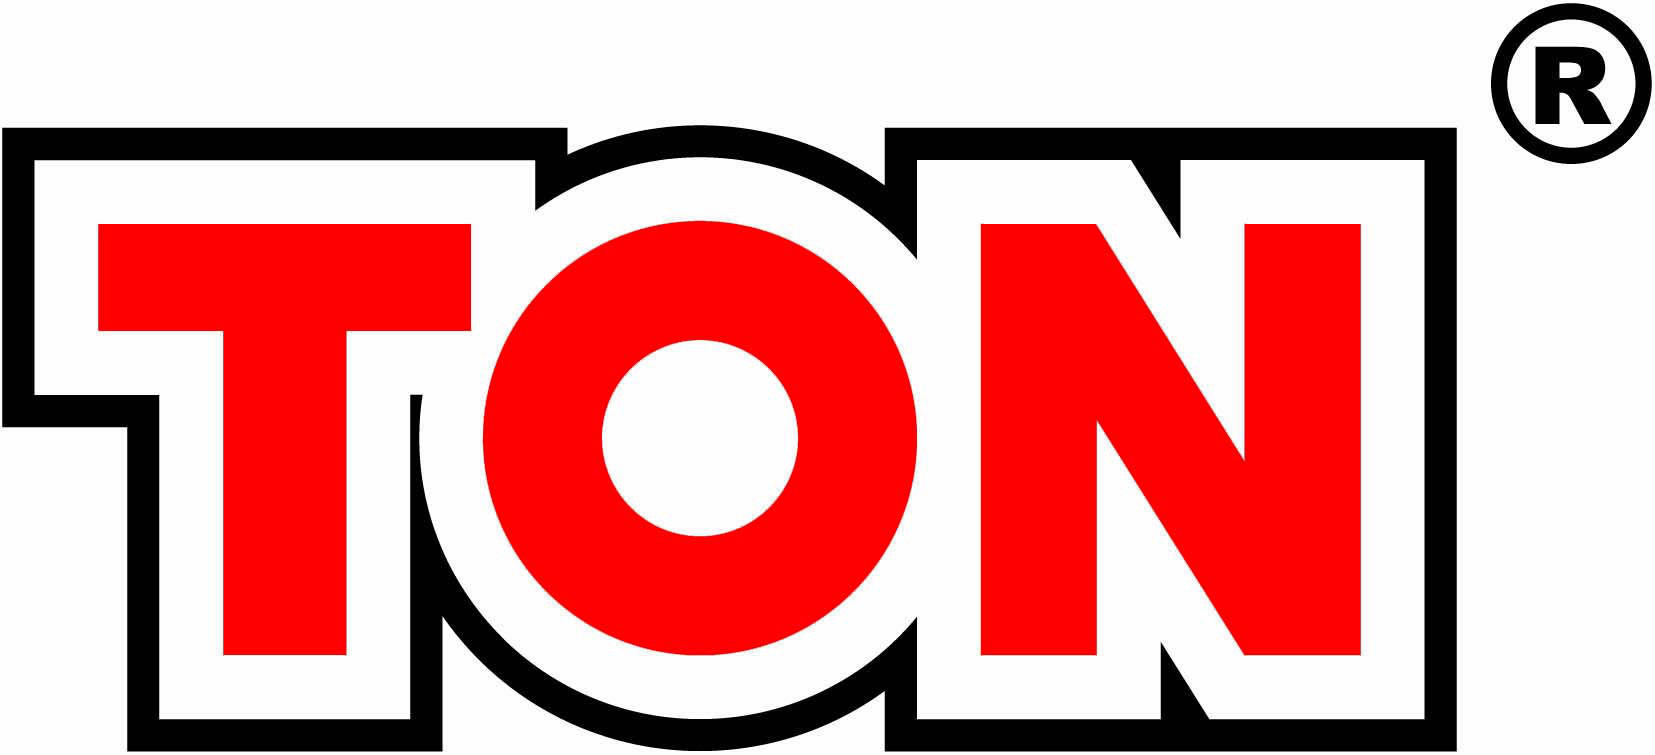 Brand: TON